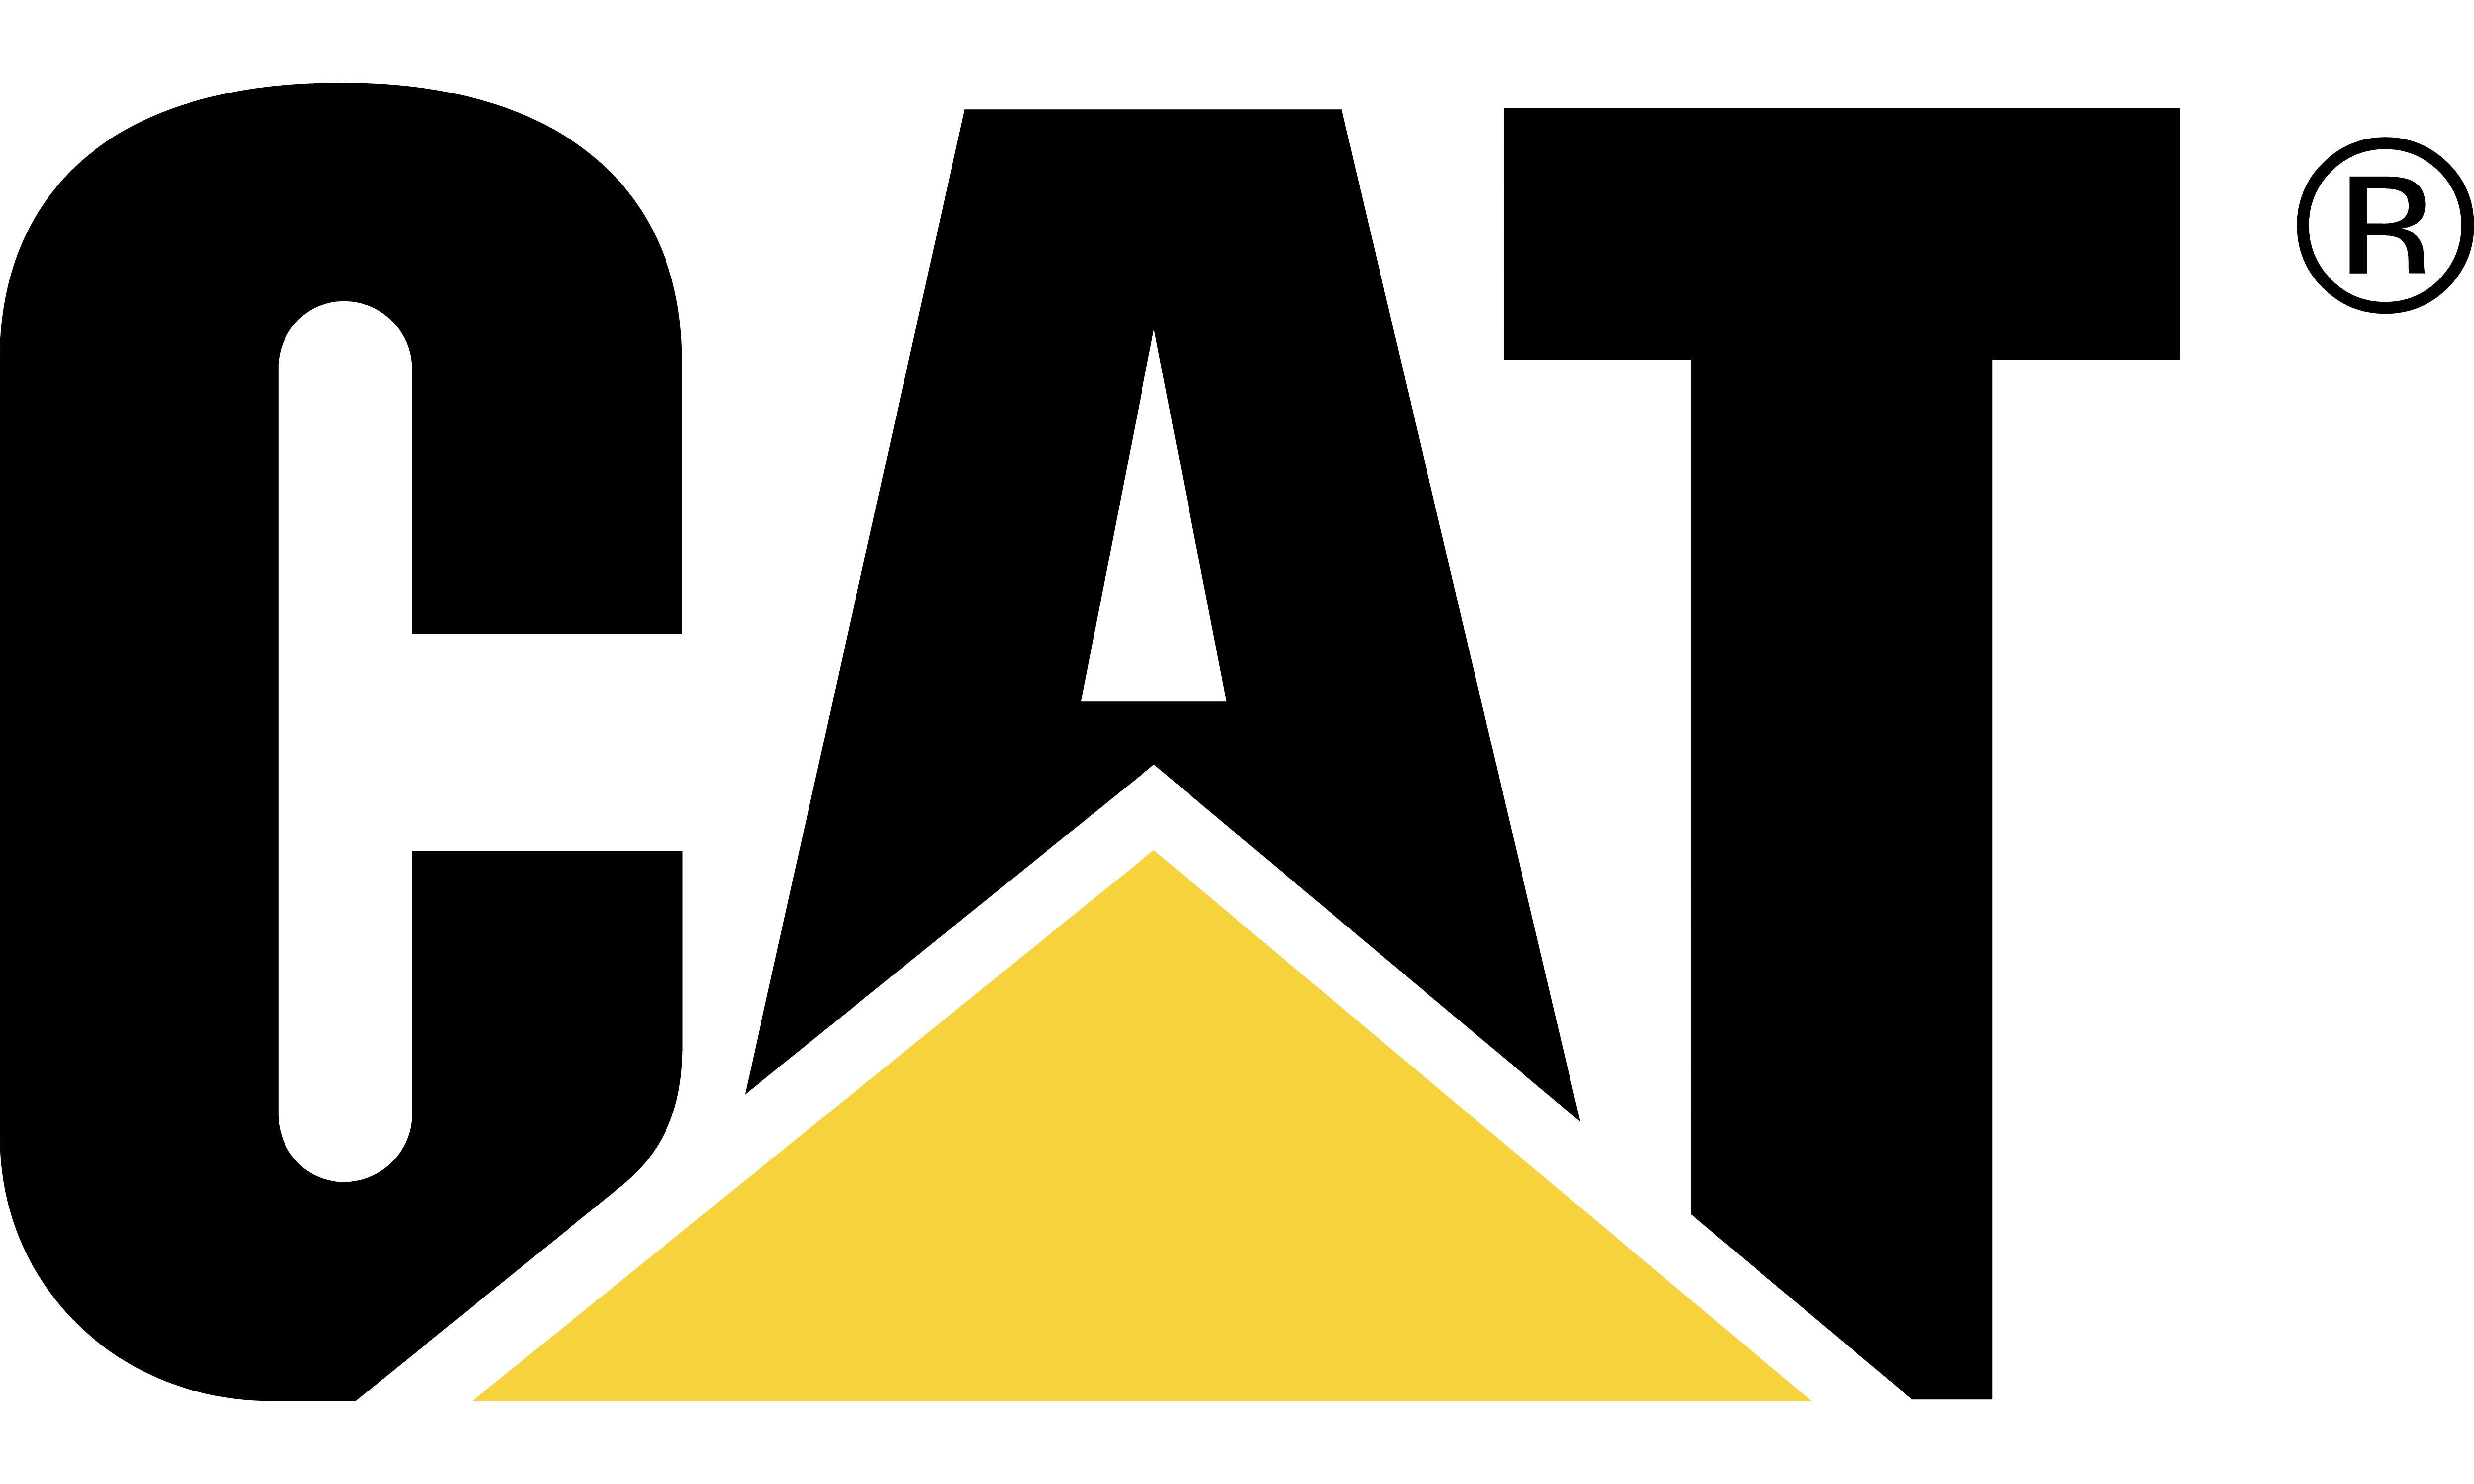 CAT-logo